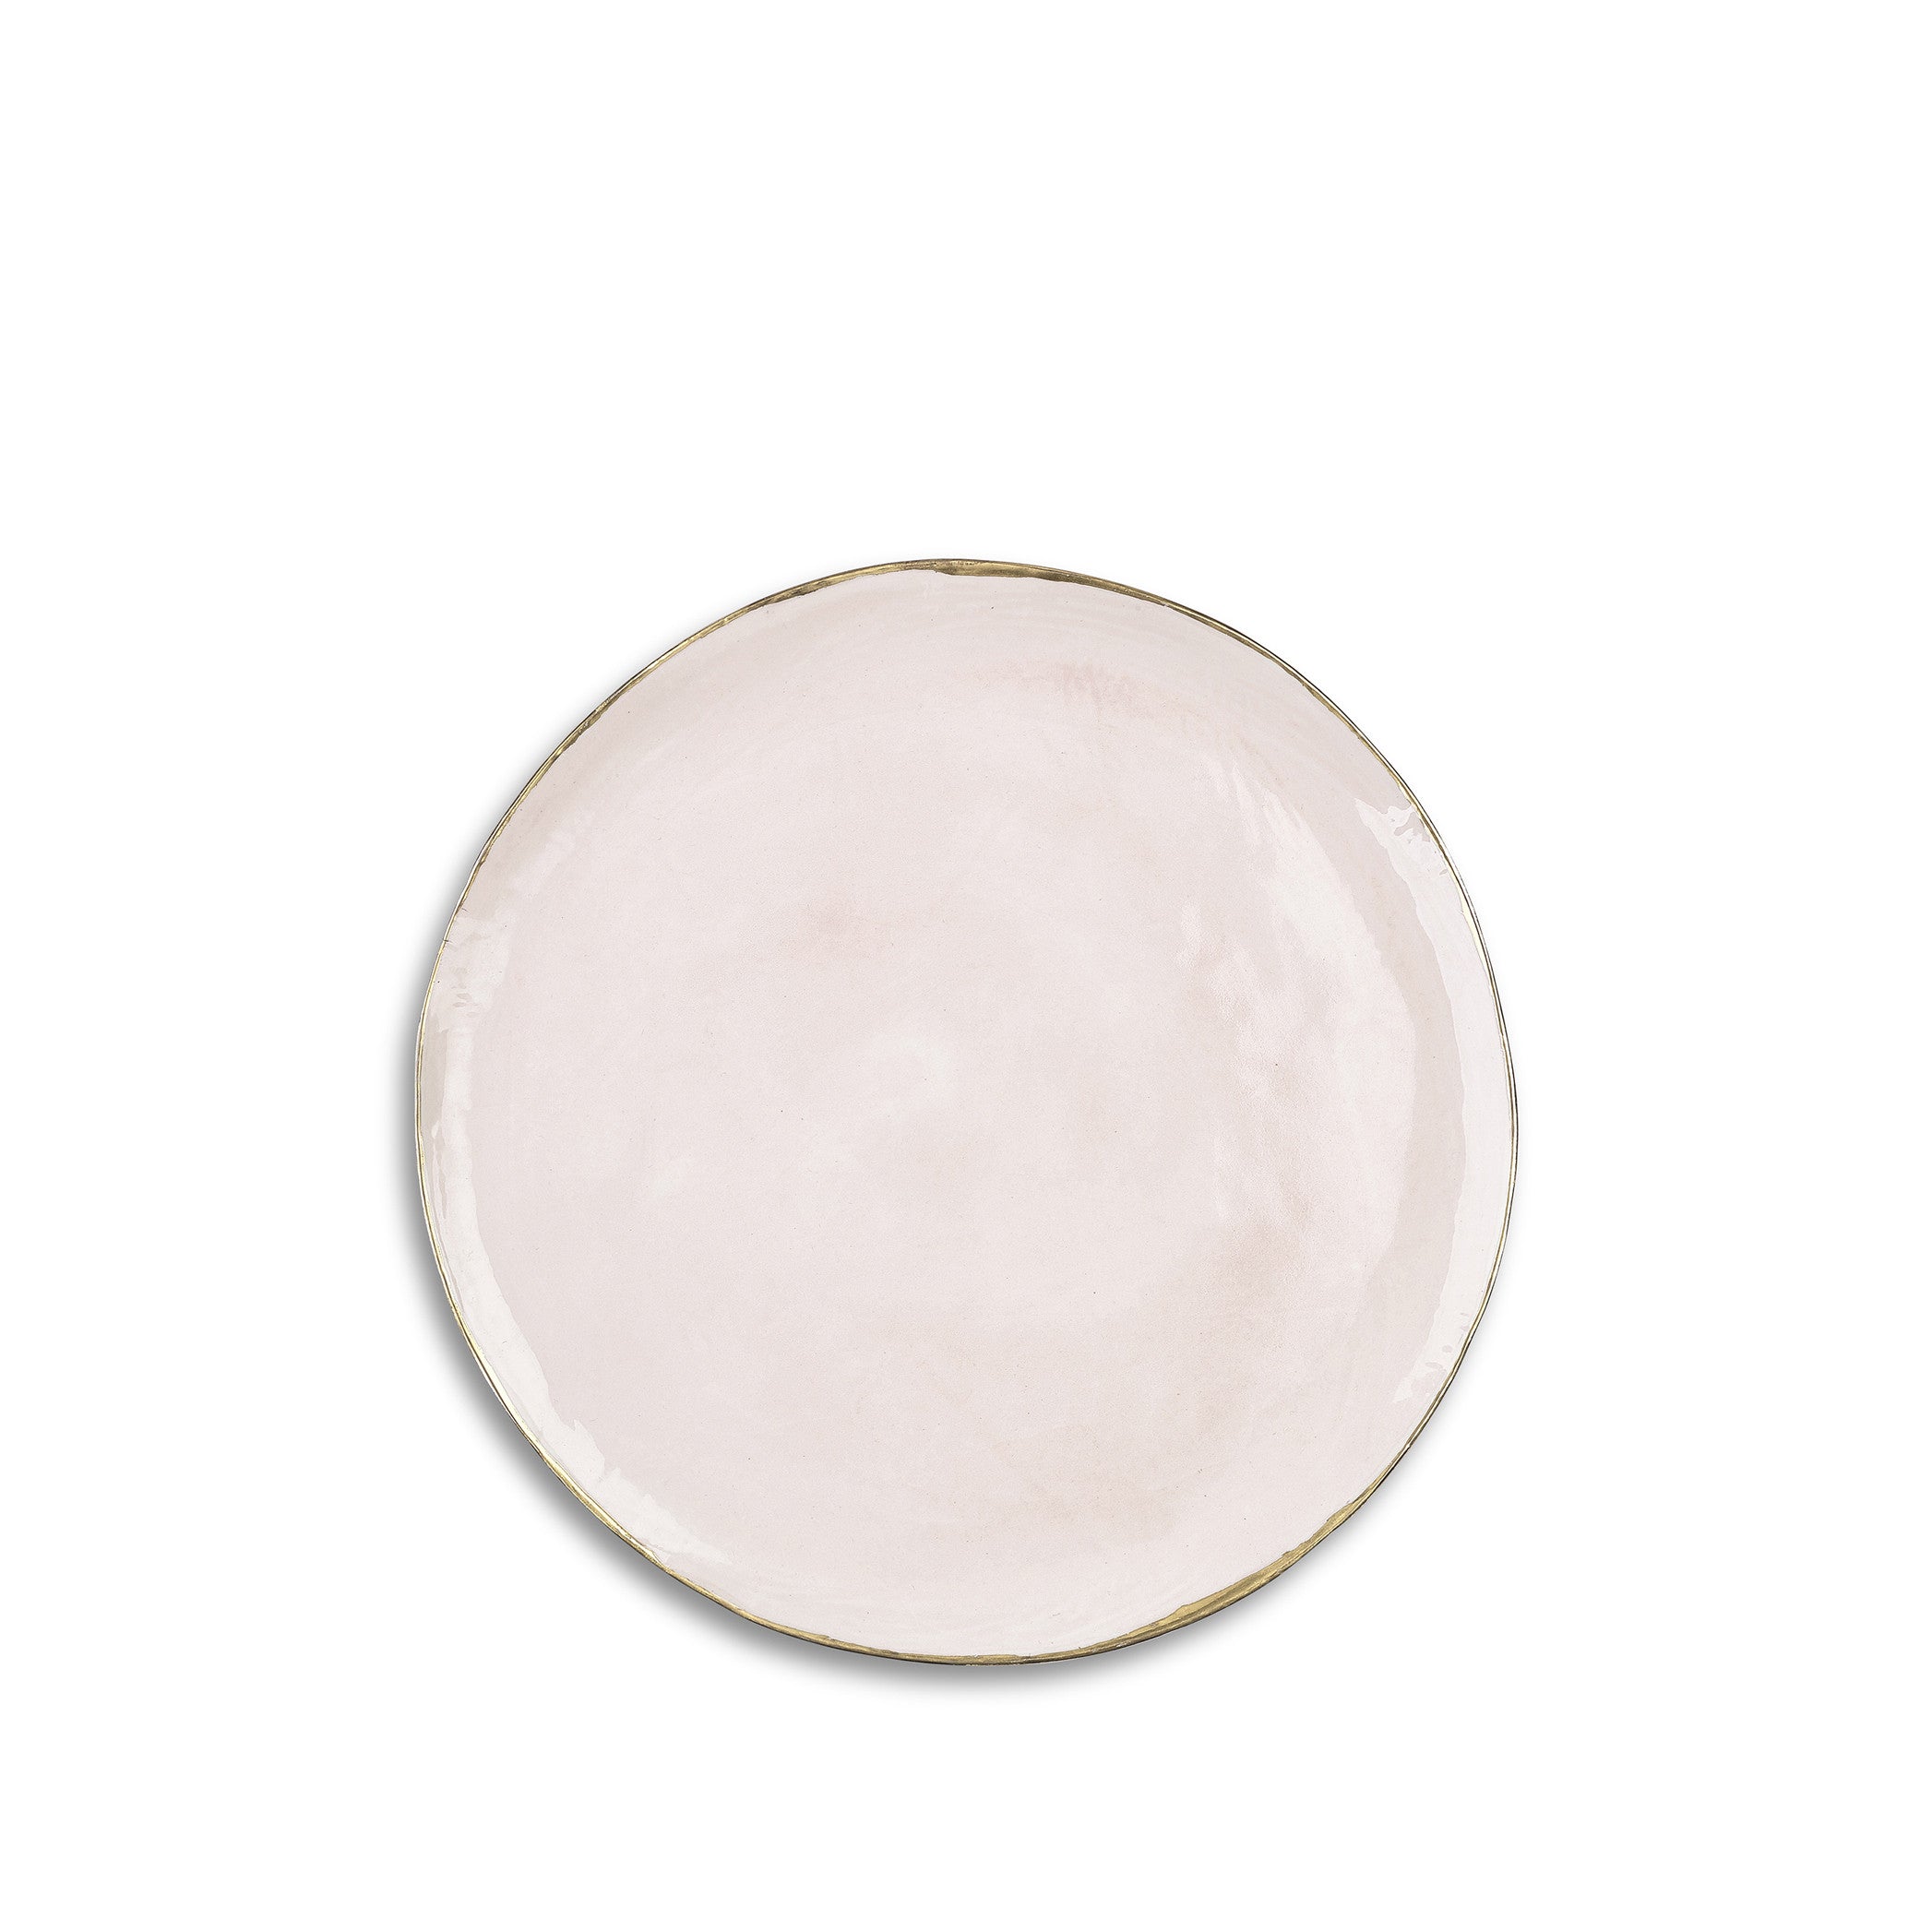 Medium Pink Ceramic Plate with Gold Rim, 28cm